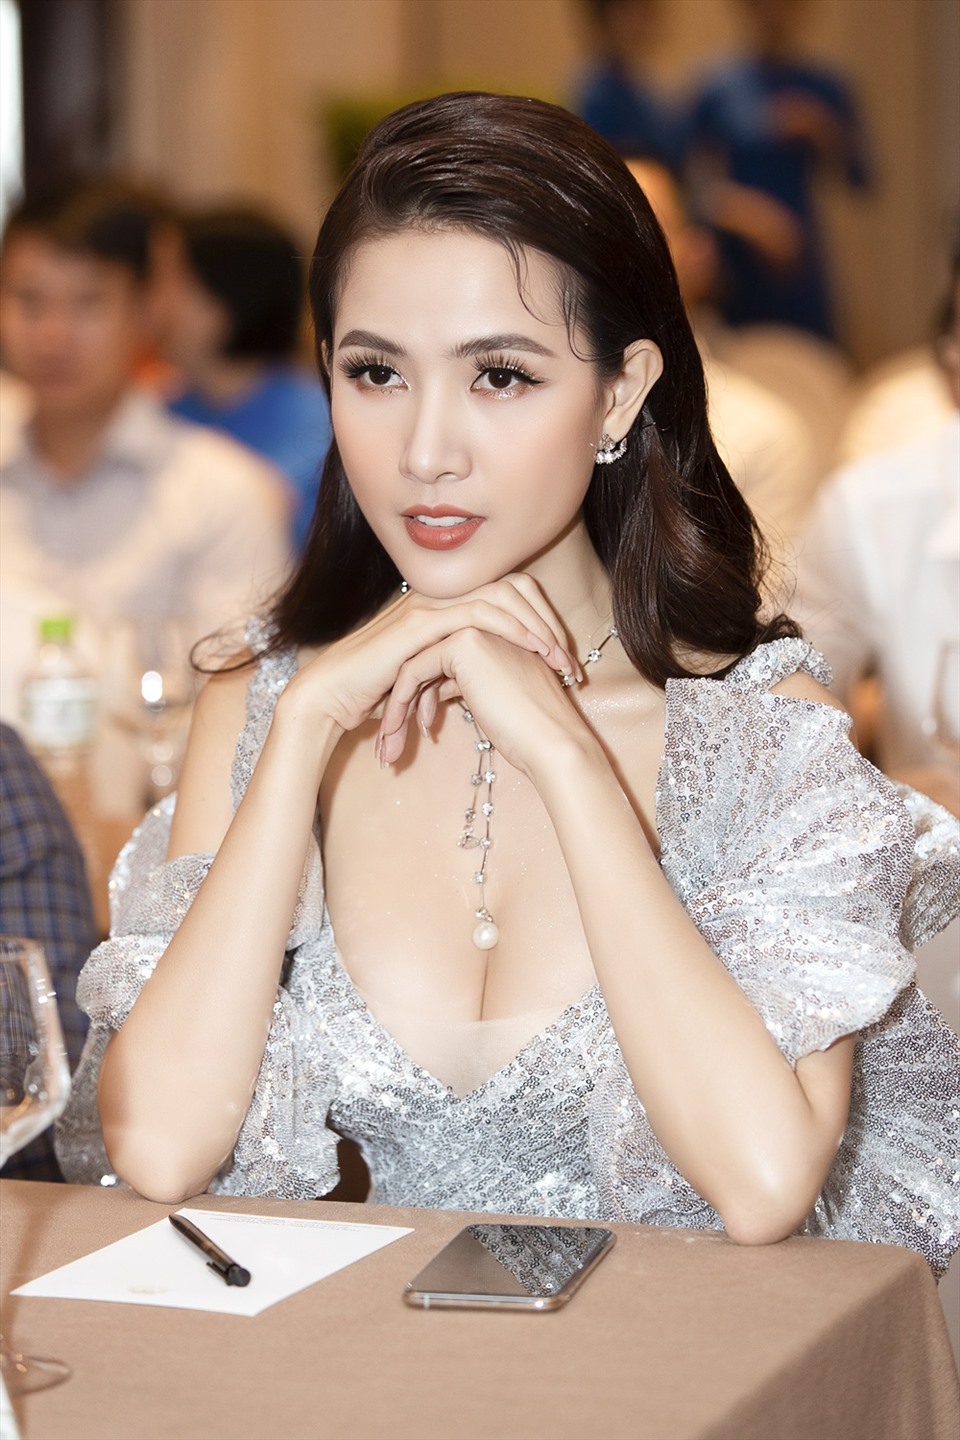 Top 5 Hoa hậu Việt Nam 2012: Đặng Thu Thảo xuất hiện là gây sốt, 1 người chuyển hướng làm ca sĩ - Ảnh 17.